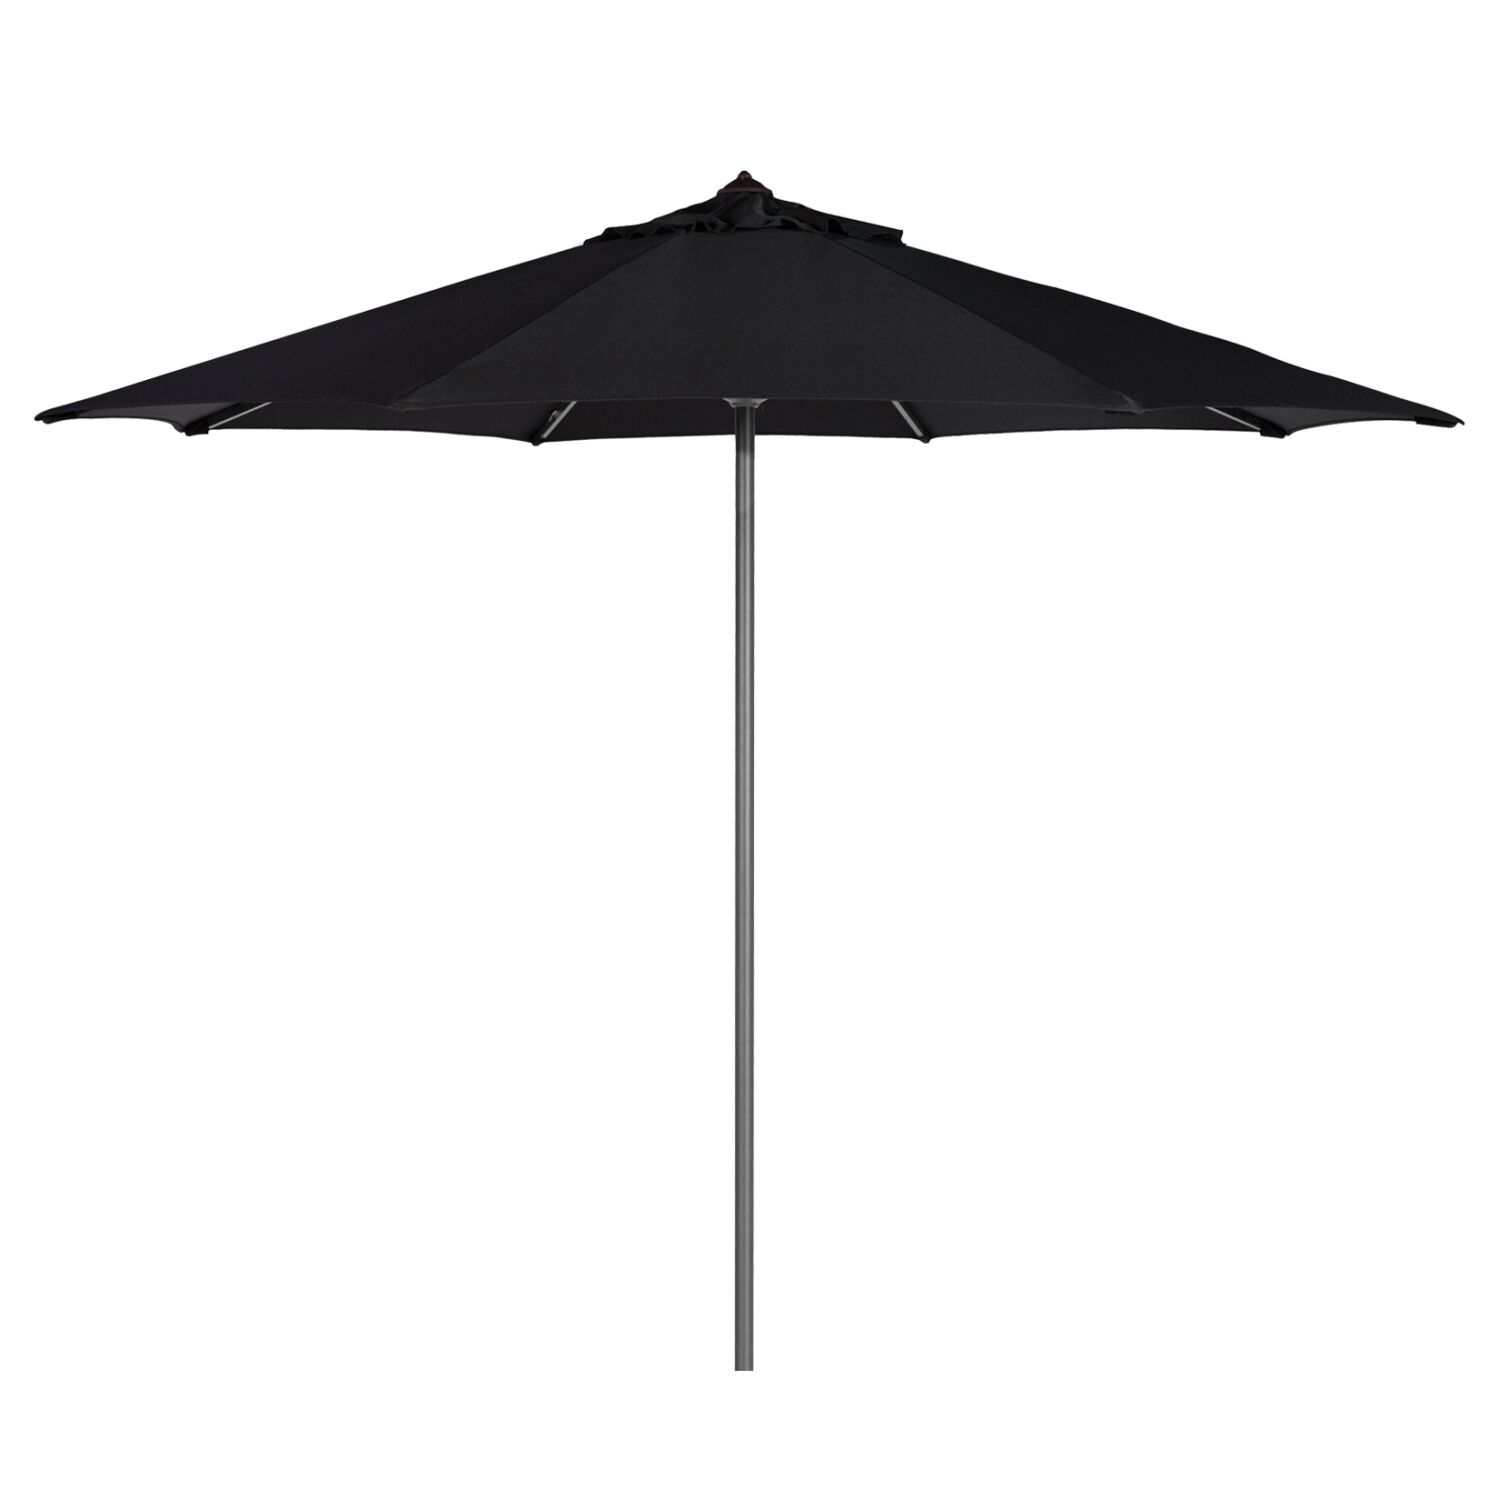 Professional Umbrella Alu Diameter 2.20m Aluminum Black Acrylic fabric HM6028.03